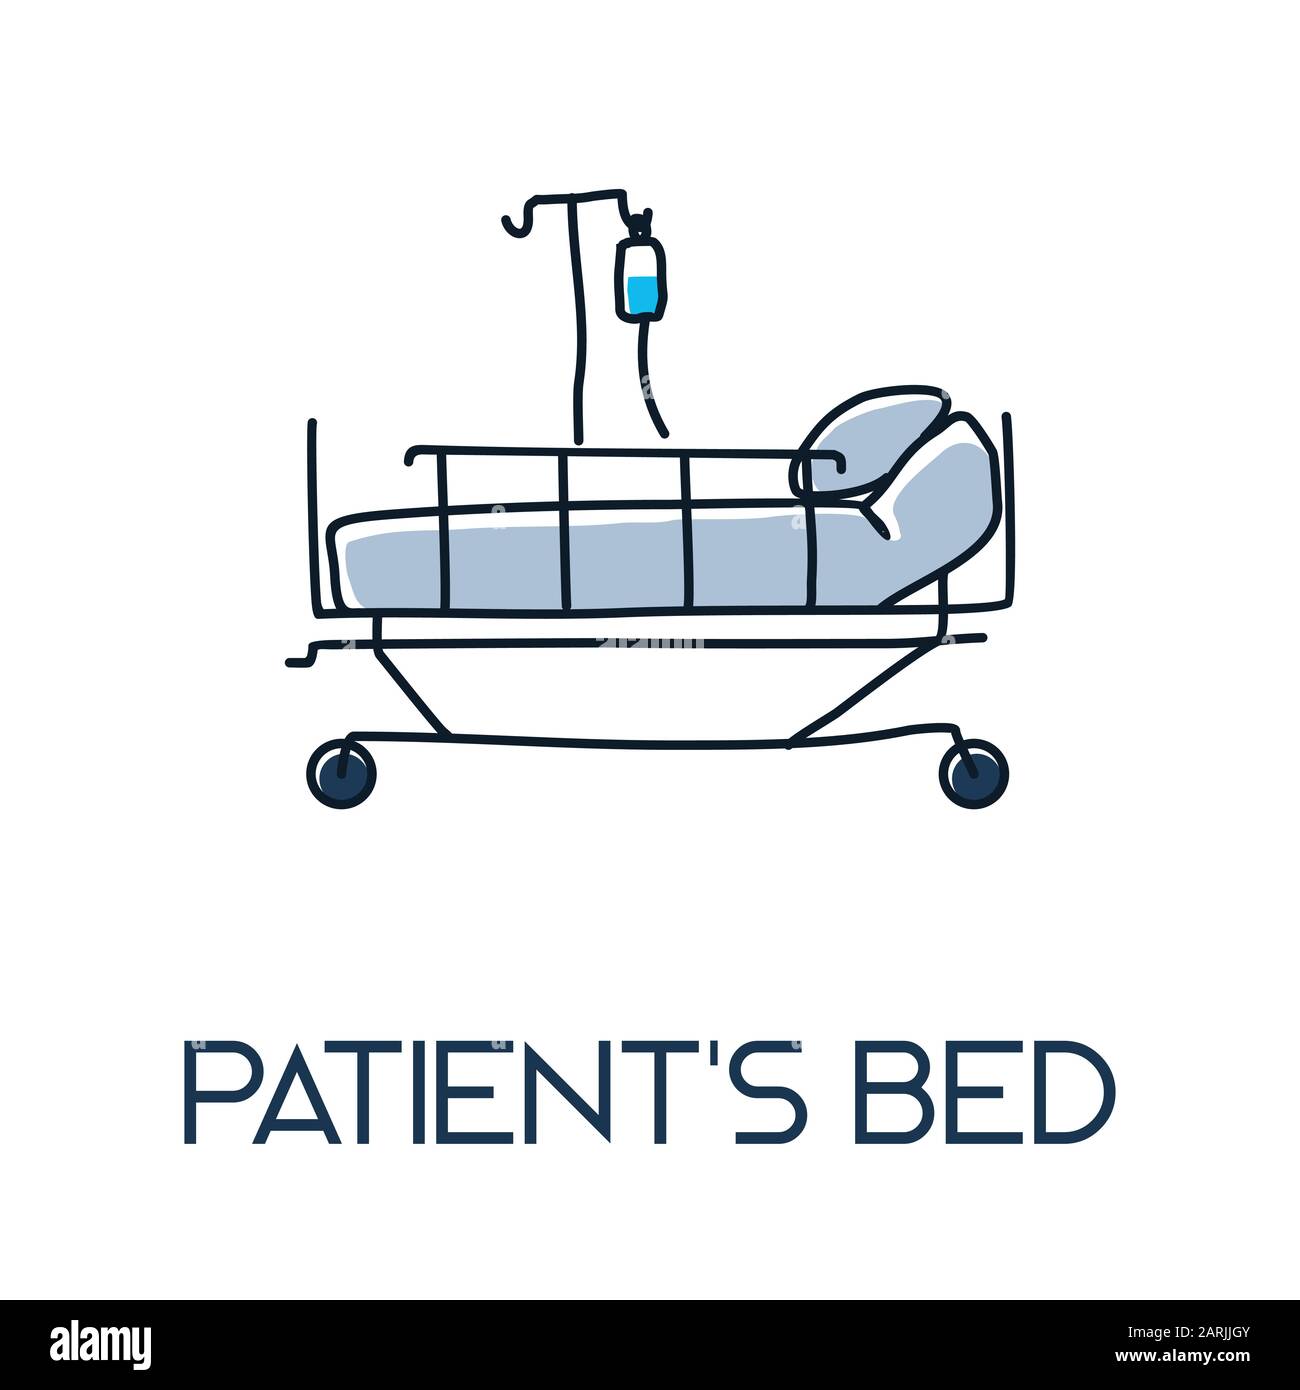 Patienten-Bett im Krankenhaus minimalistisch aus der Linie handgezeichnete medizinische Flach-Ikone-Illustration Stock Vektor